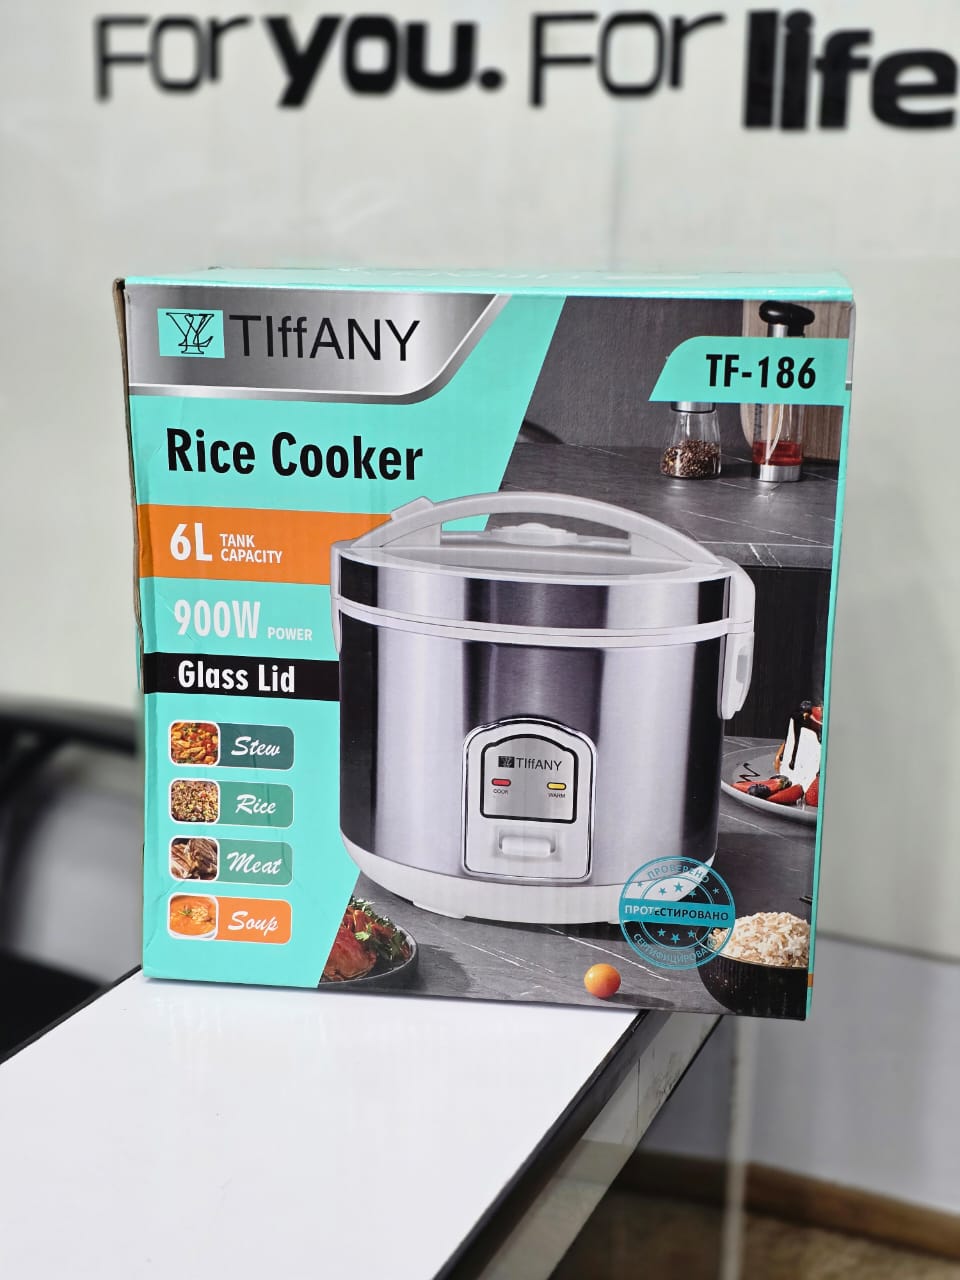 Tiffany Rice Cooker TF-186